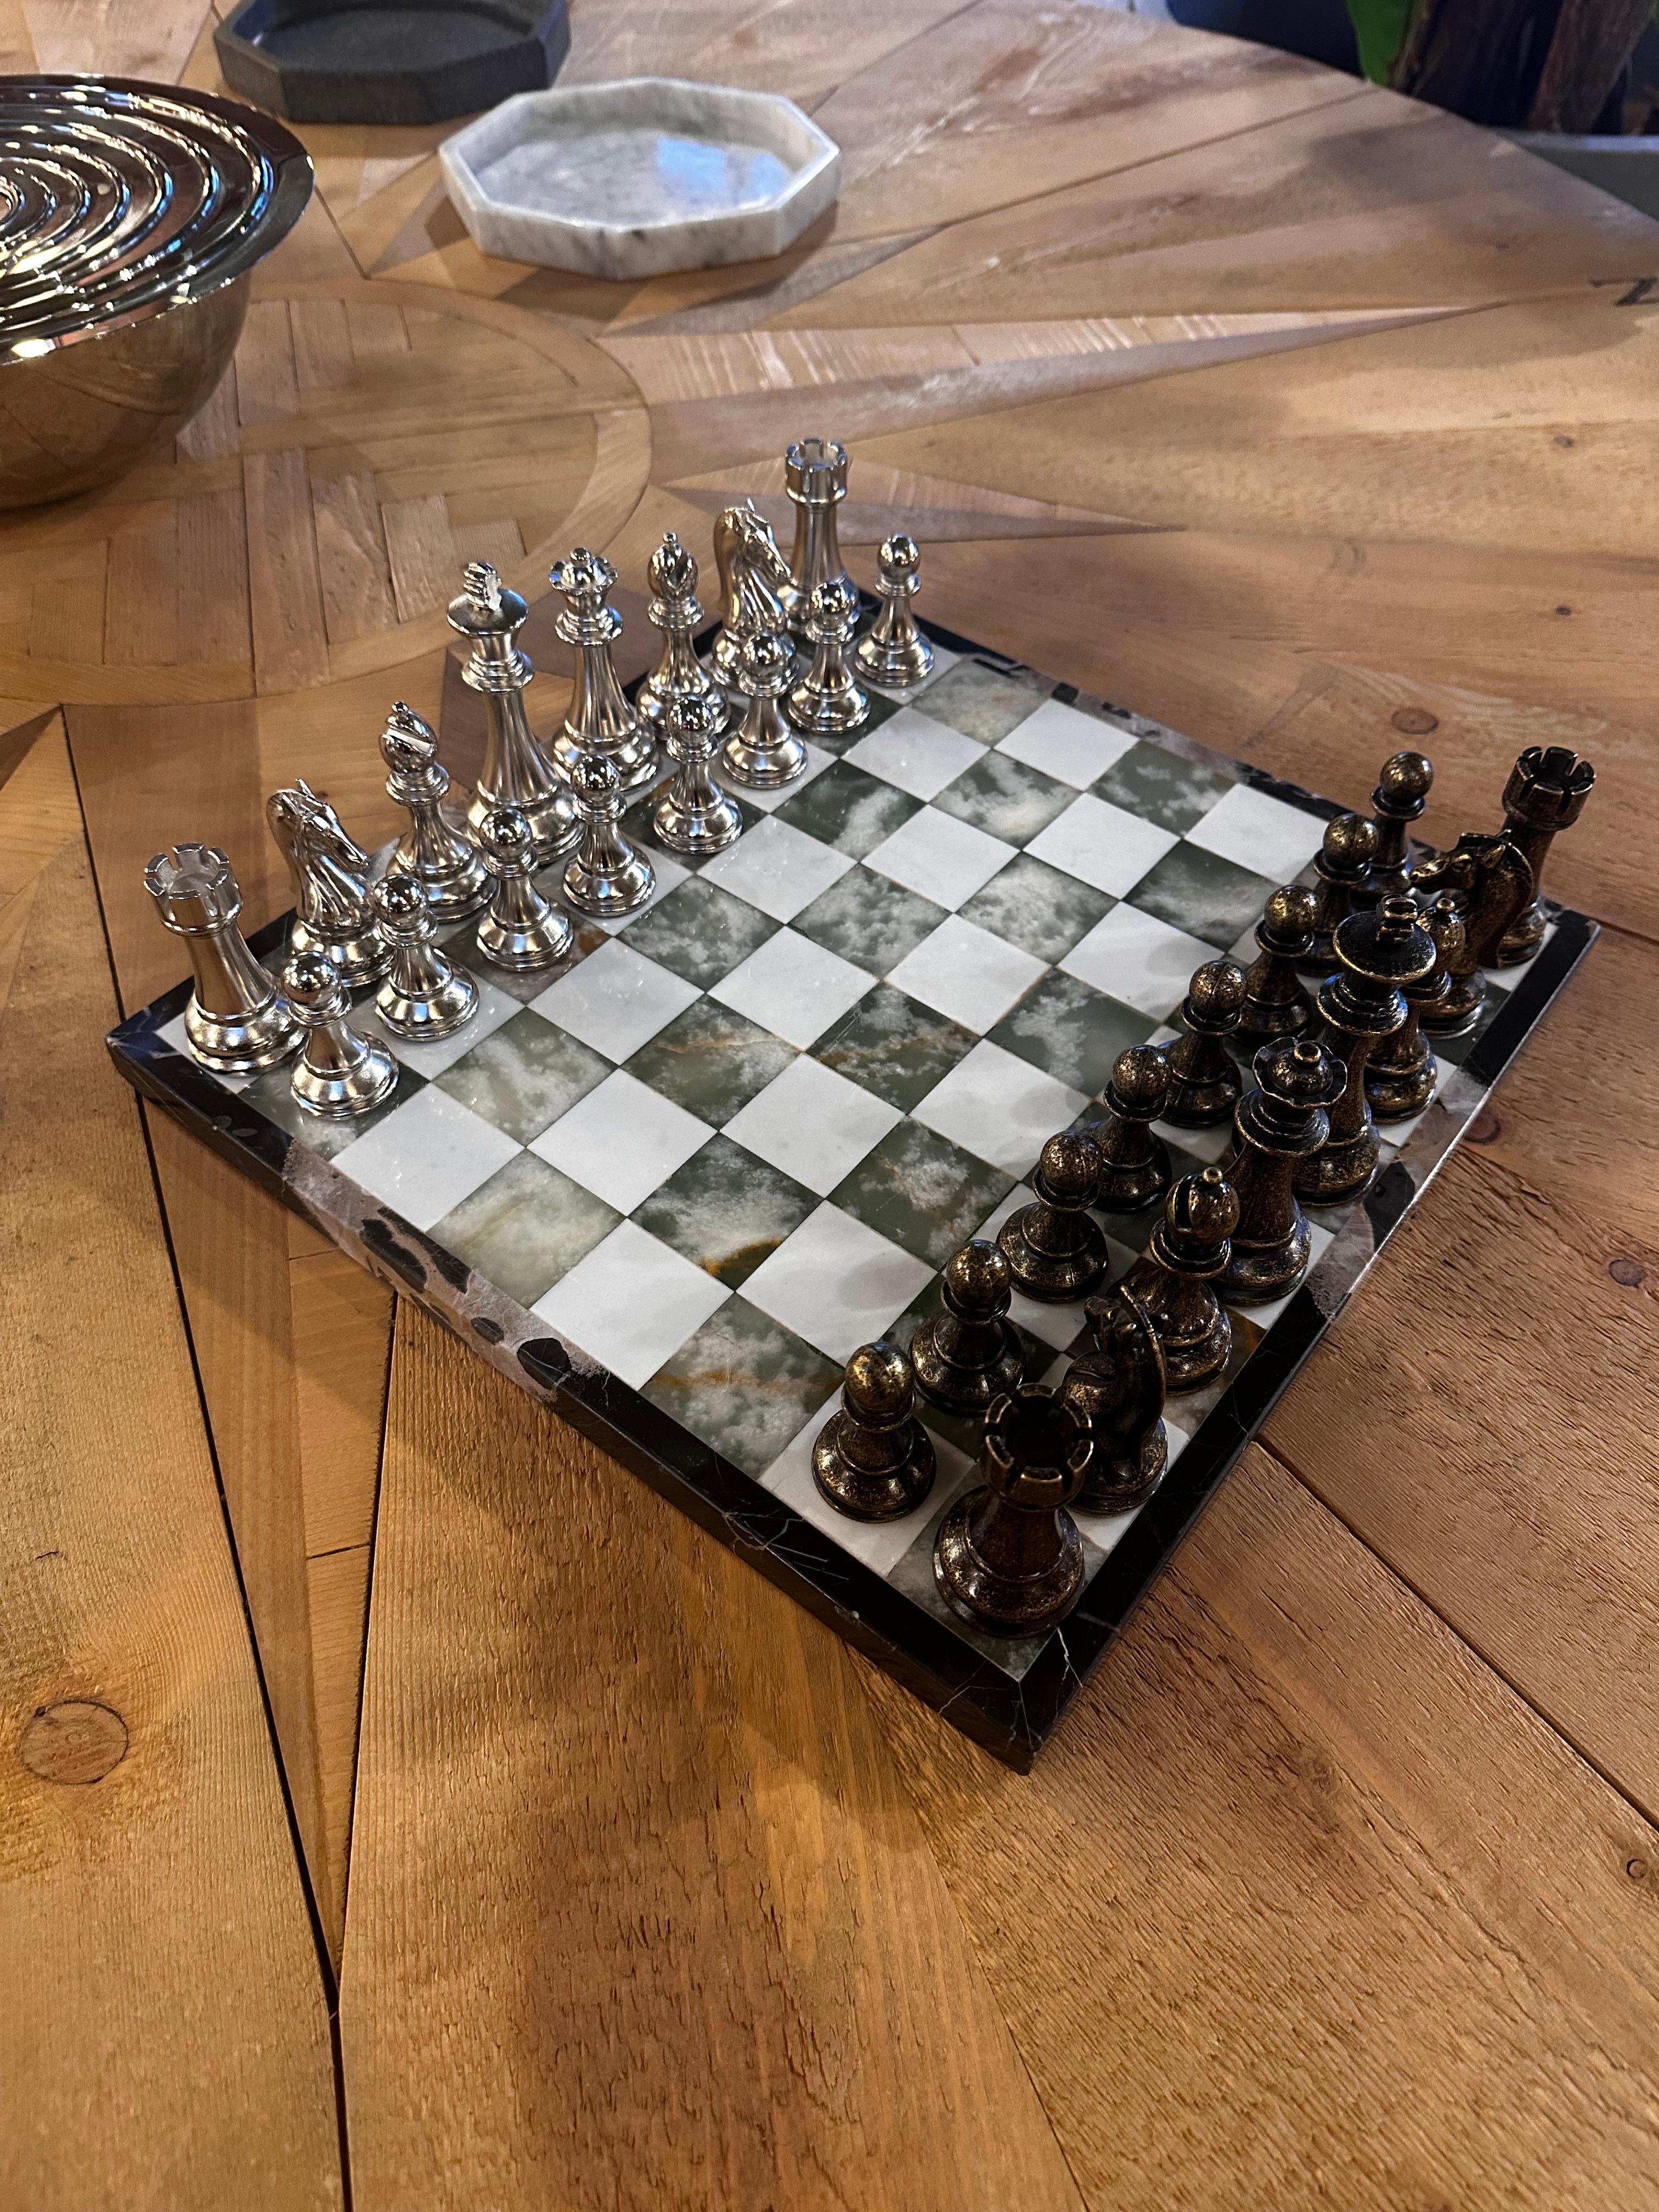 Le grand jeu d'échecs en marbre italien vintage des années 1980 est un jeu de société luxueux et visuellement saisissant. L'échiquier est fabriqué en marbre italien exquis, ce qui lui confère une élégance intemporelle. Associé à des pièces d'échecs